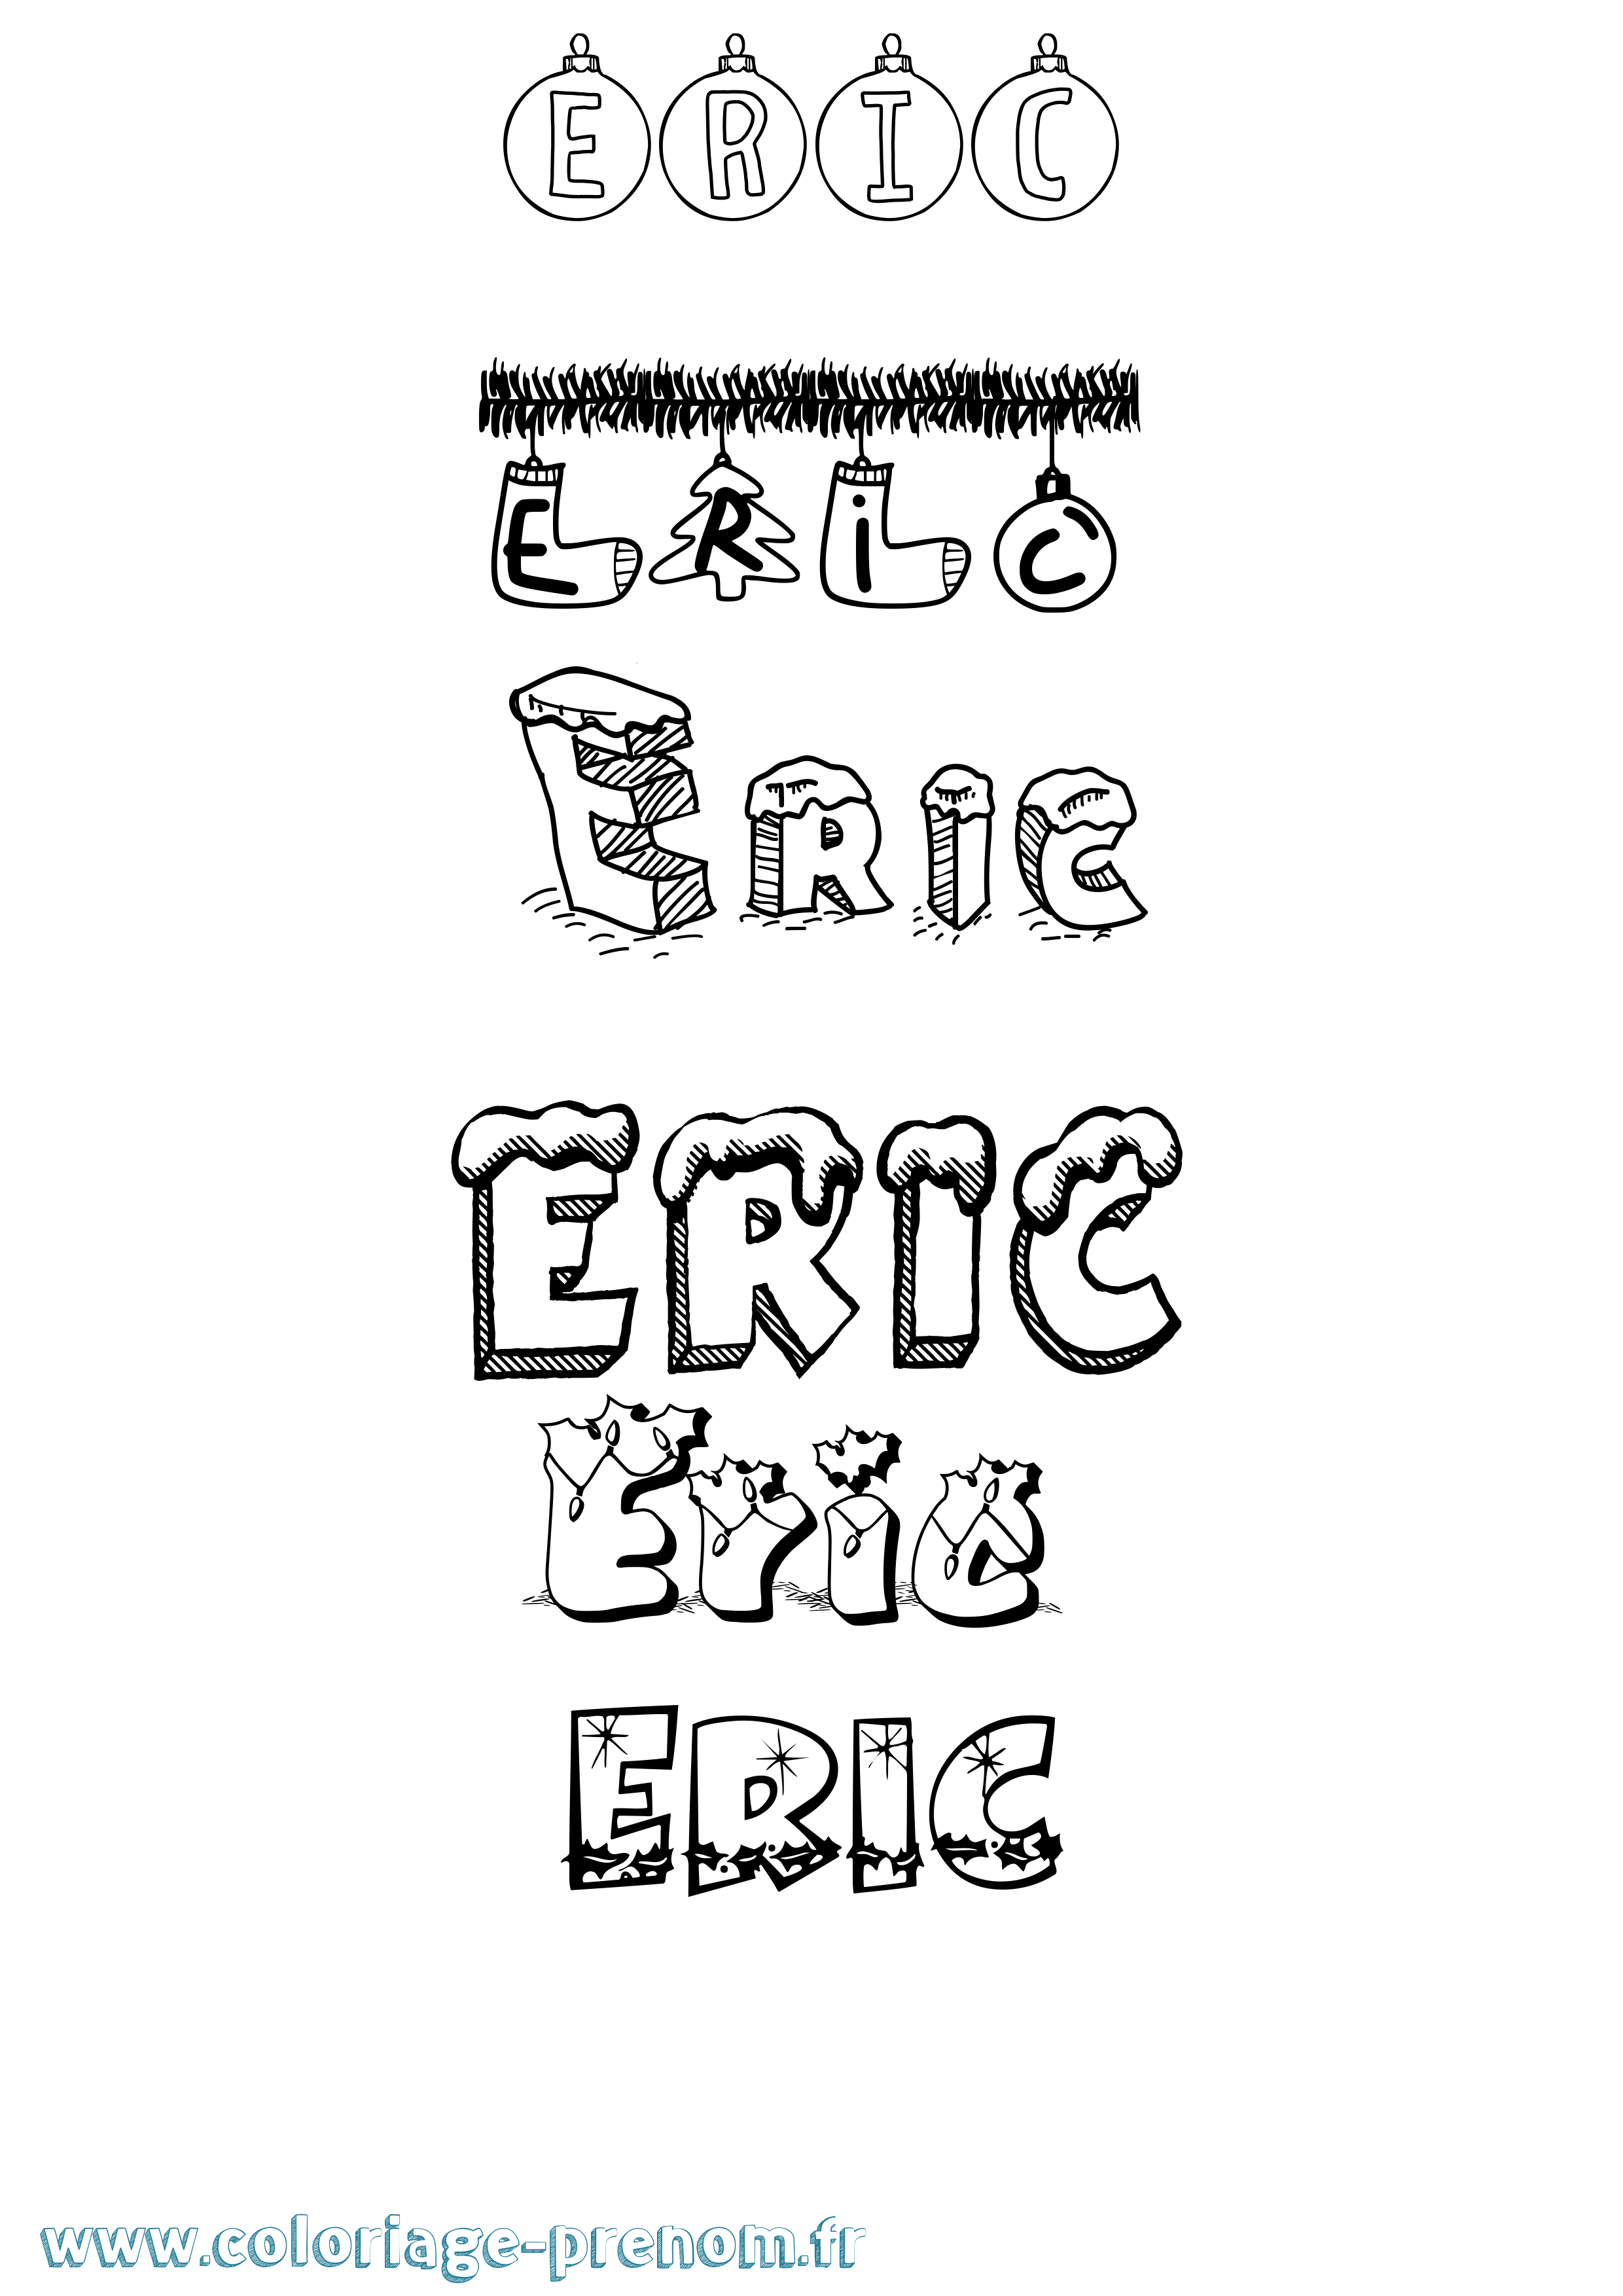 Coloriage prénom Eric